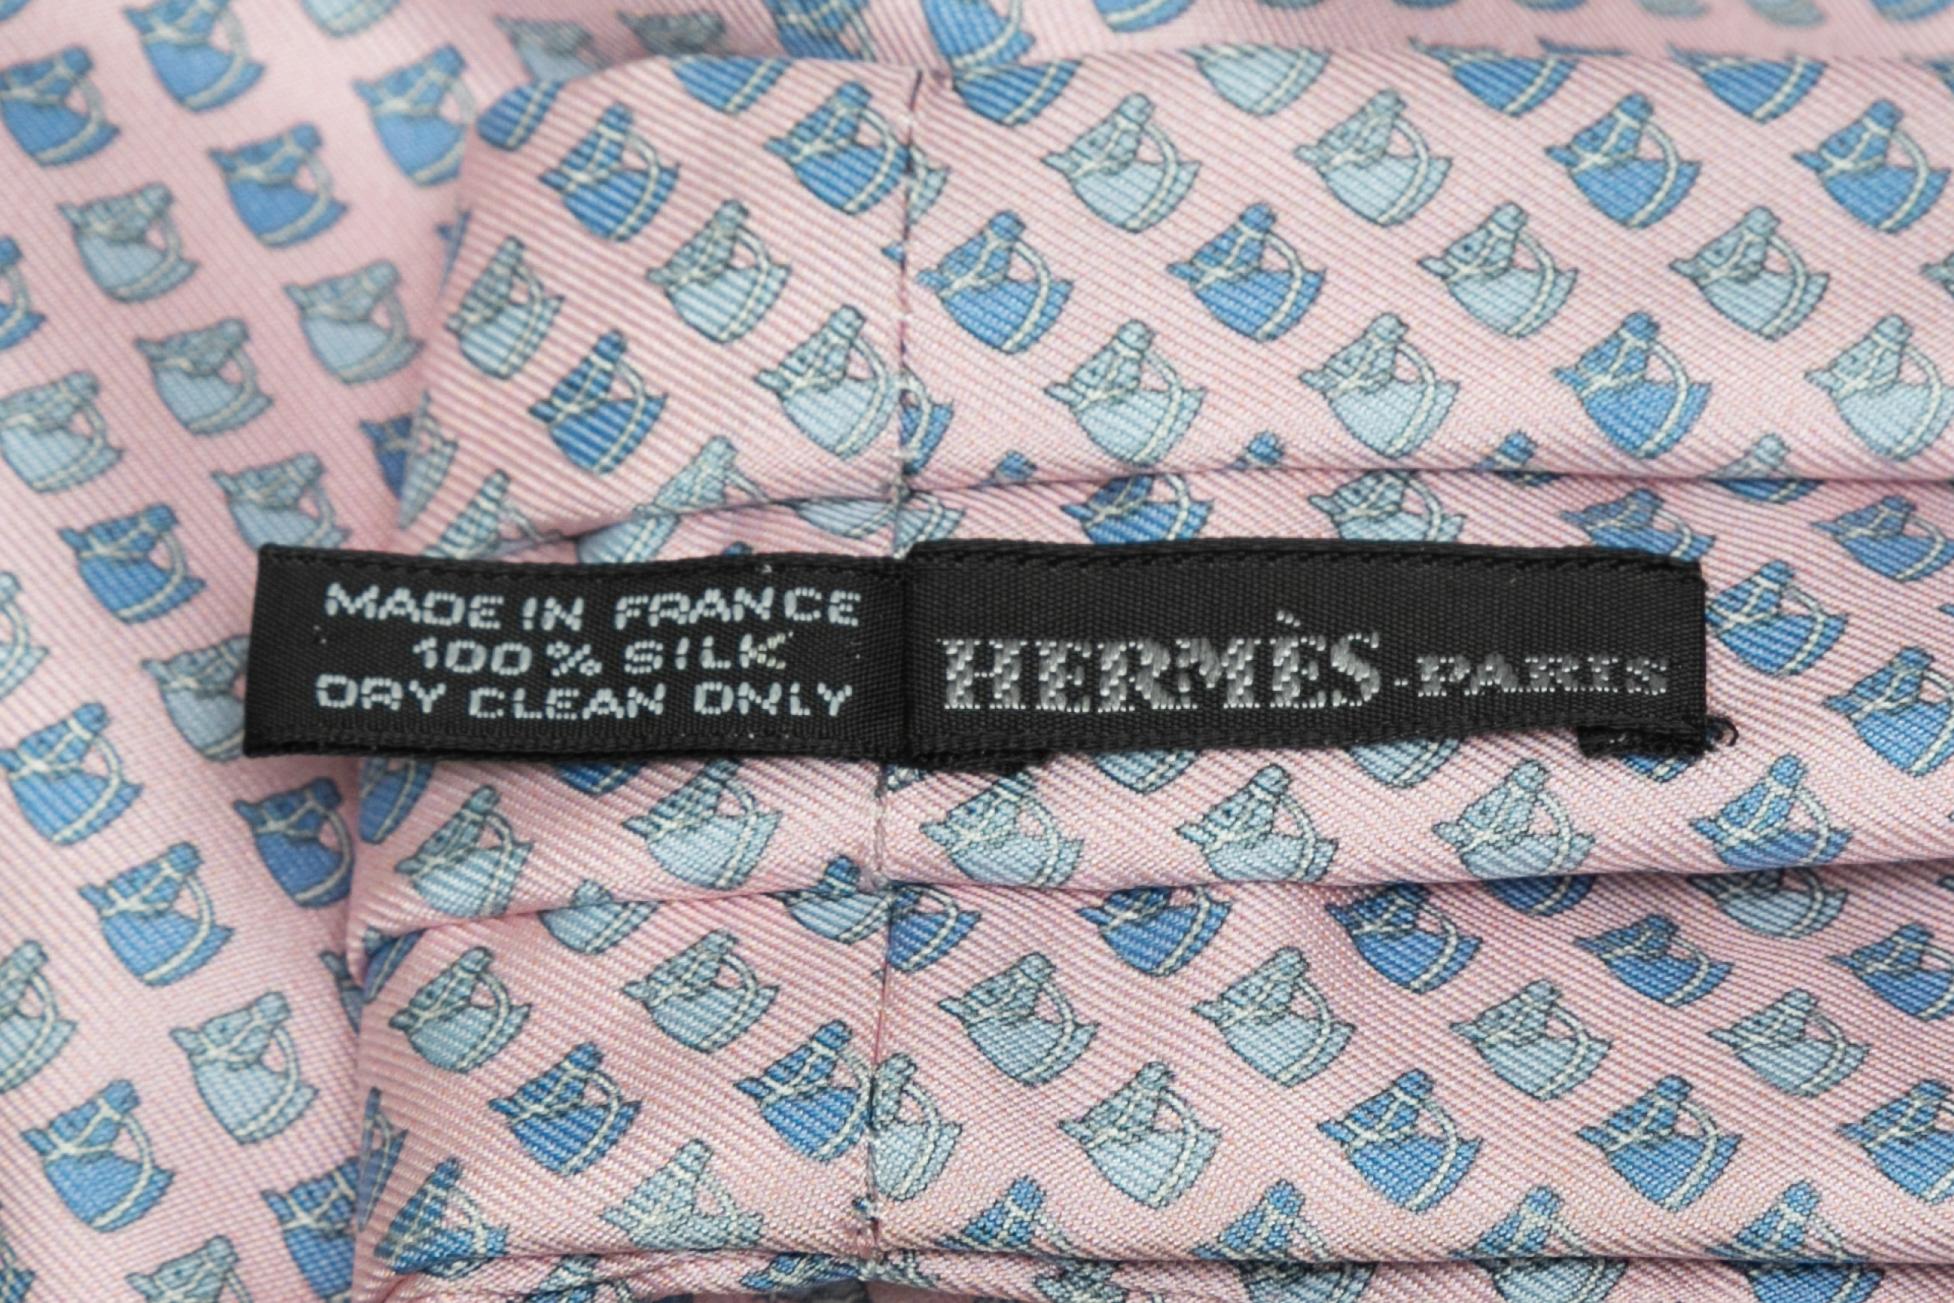 Cravate en soie rose pâle et bleu pâle imprimée cheval par Hermès. Largeur 7